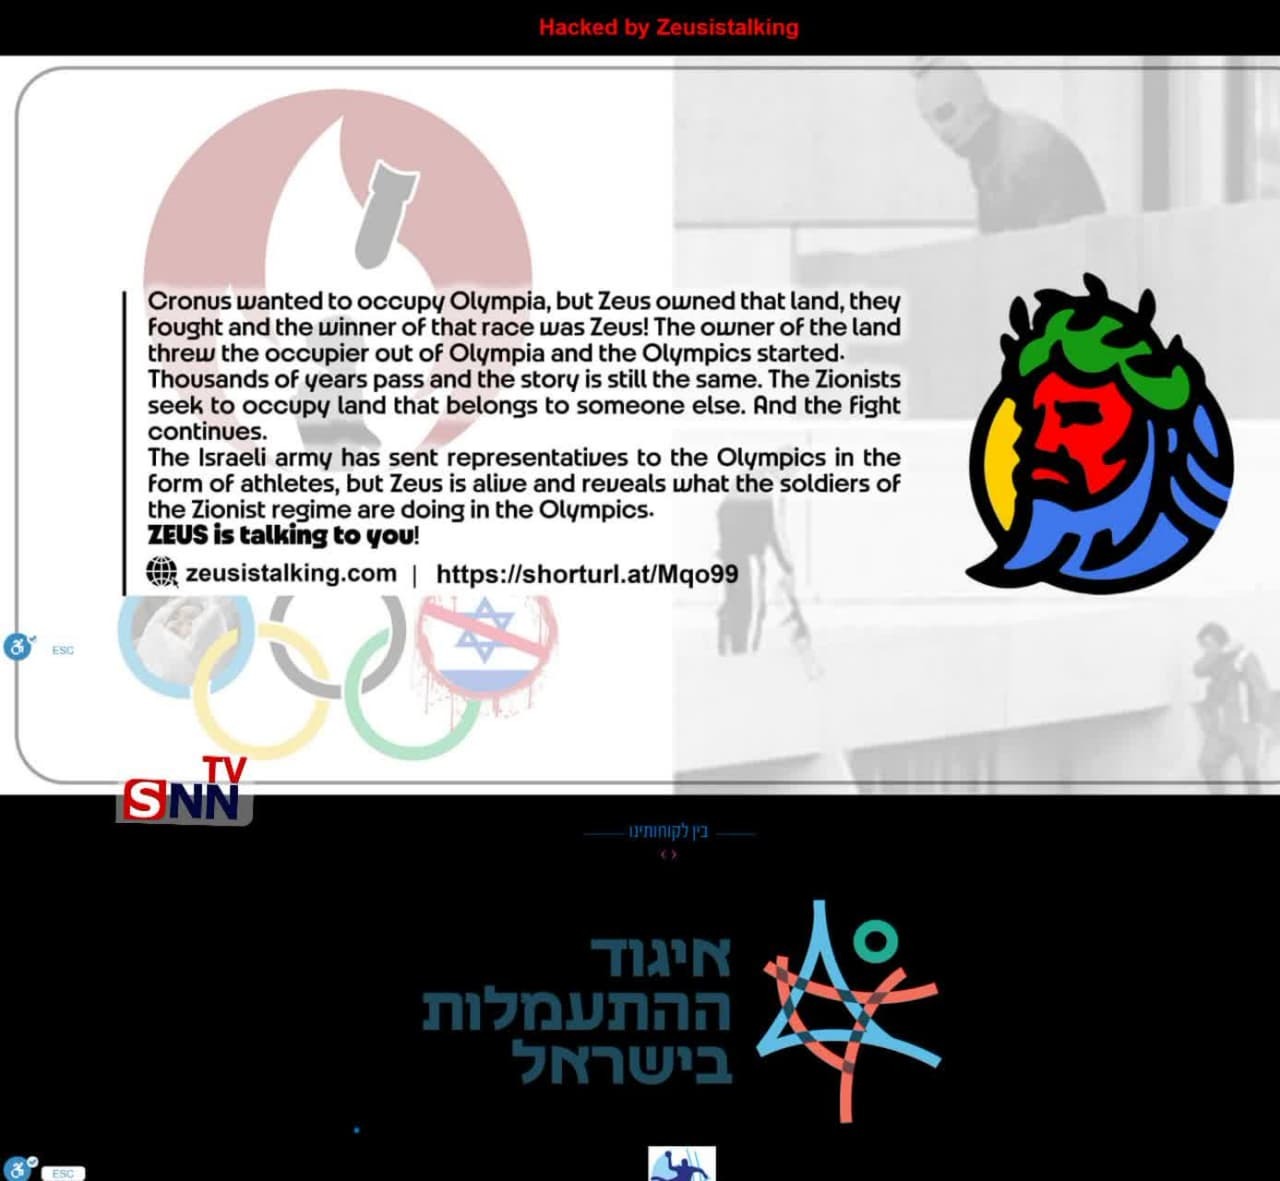 سایت کمیته المپیک رژیم منحوس هک شد